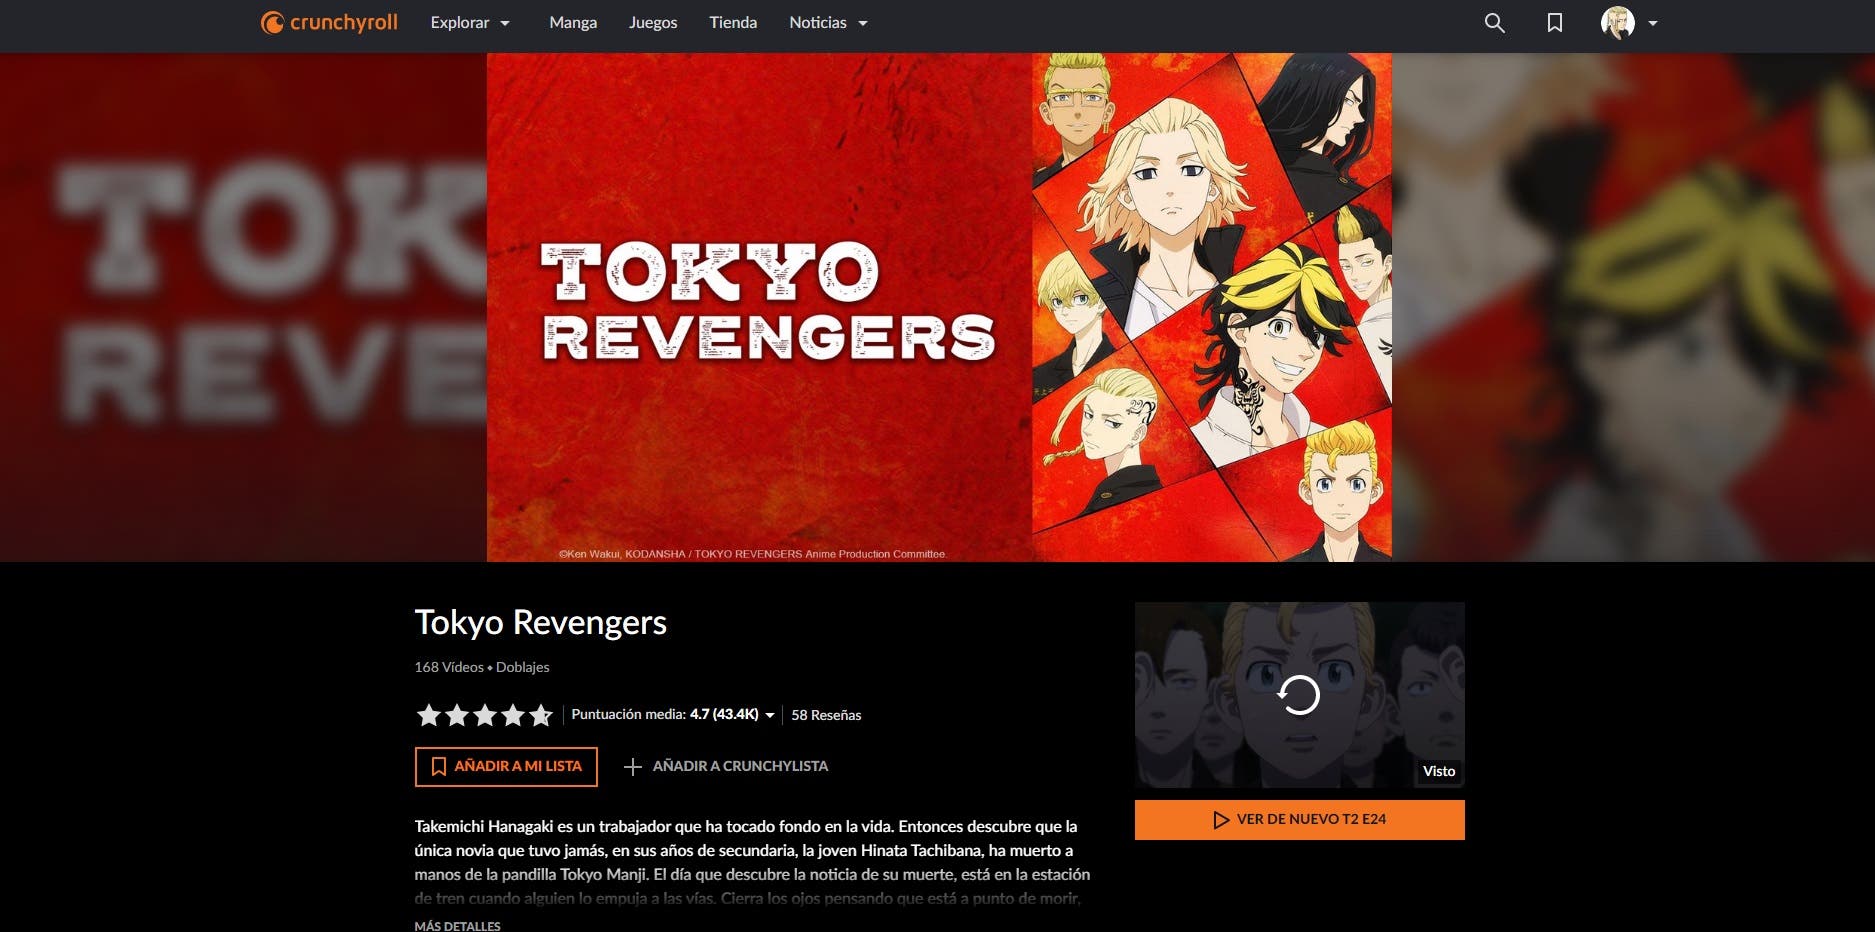 Tokyo Revengers: Dónde puedo ver la temporada 2